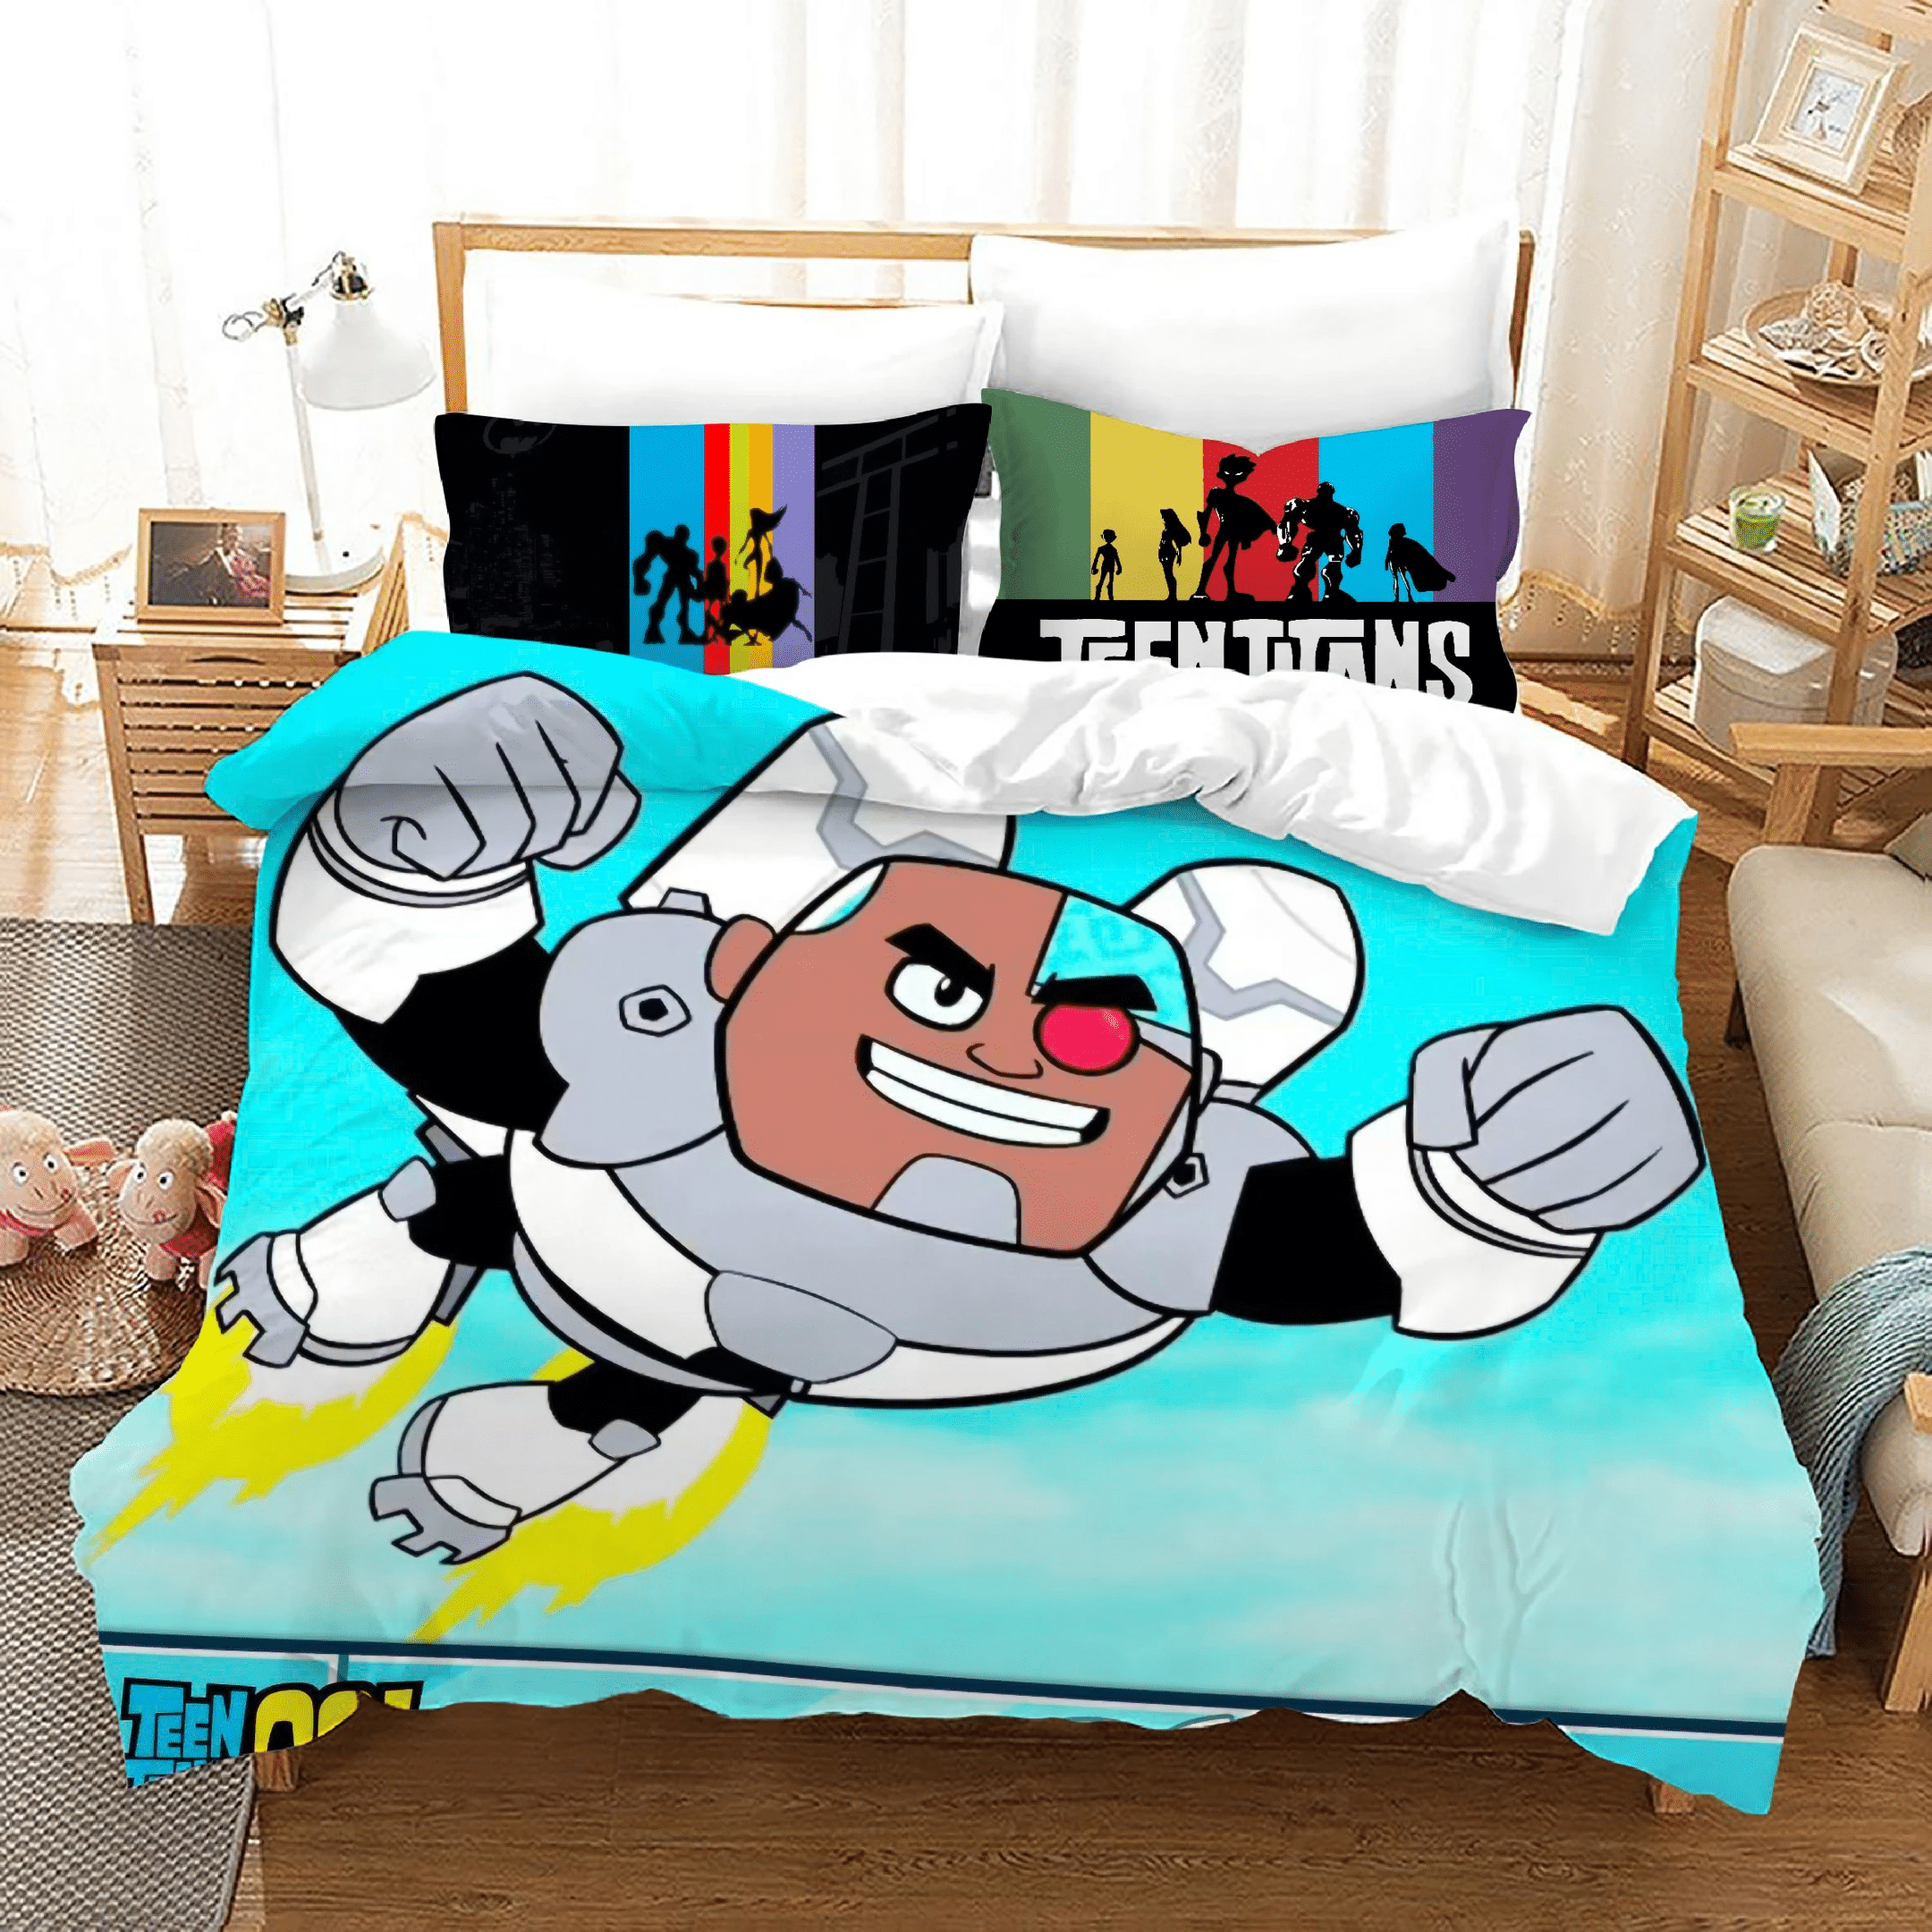 Teen Titans Go 21 Duvet Cover Pillowcase Bedding Sets Home